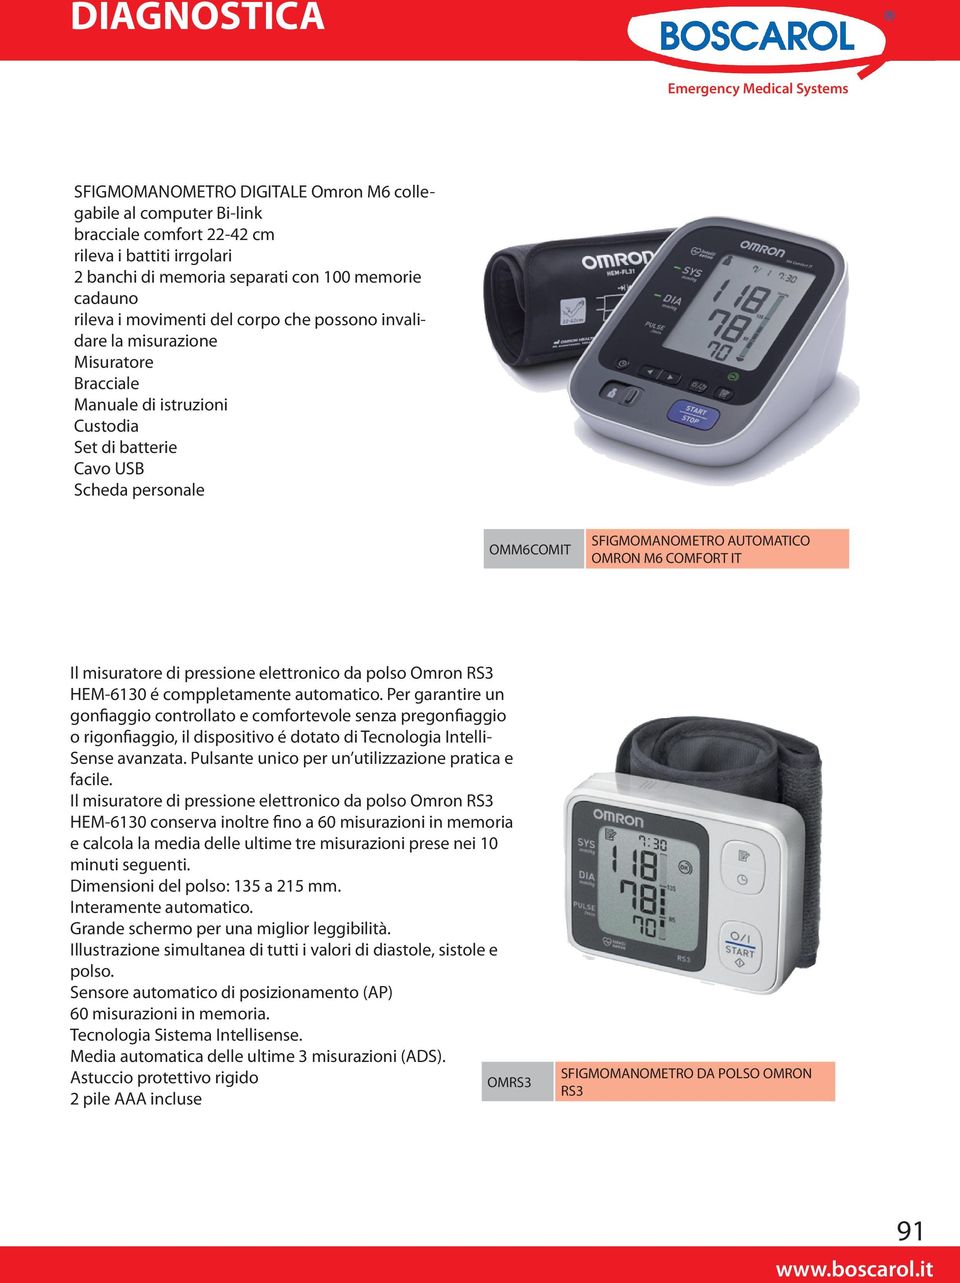 misuratore di pressione elettronico da polso Omron RS3 HEM-6130 é comppletamente automatico.